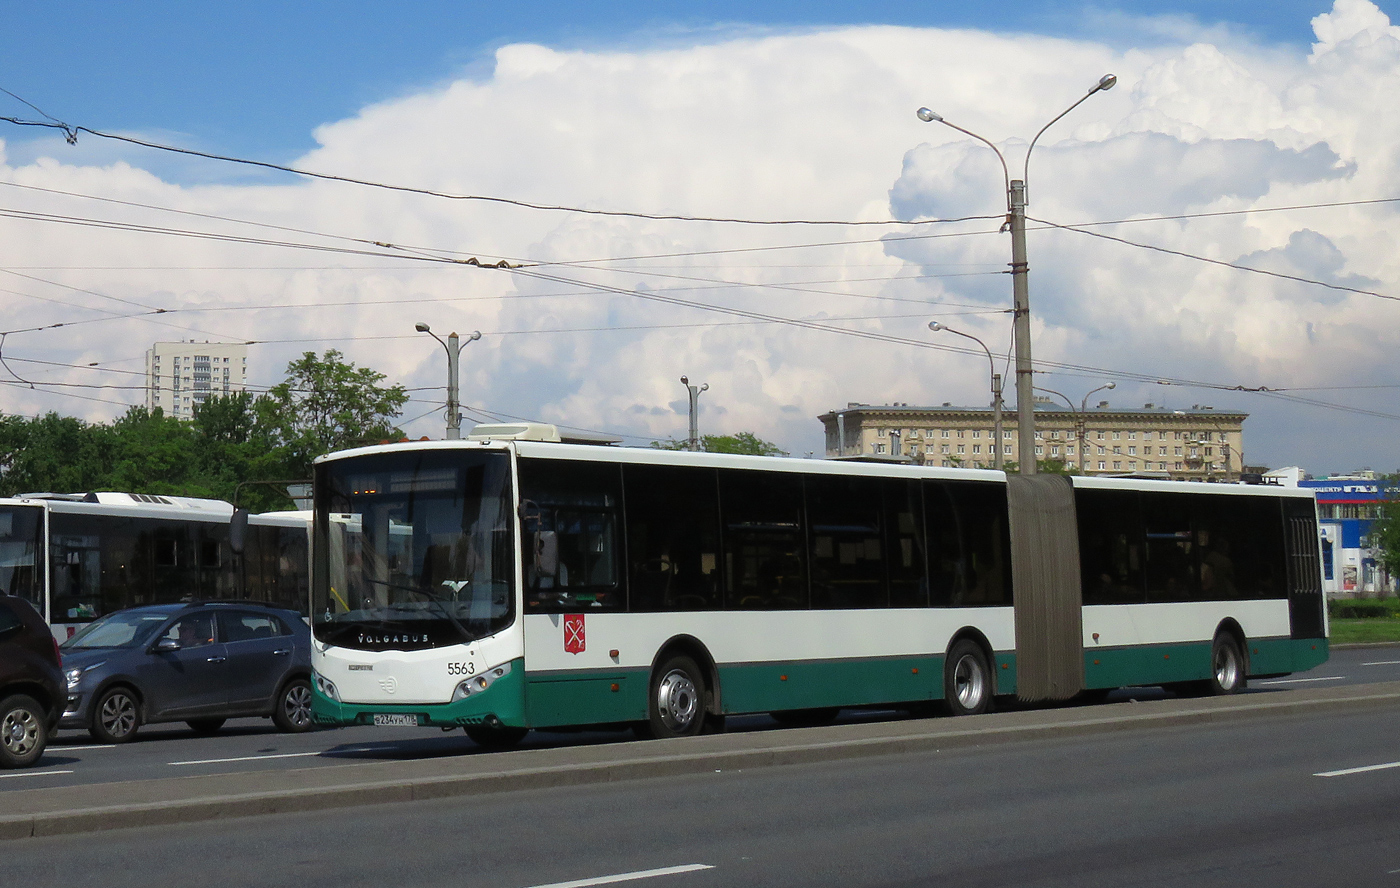 Saint Petersburg, Volgabus-6271.00 # 5563